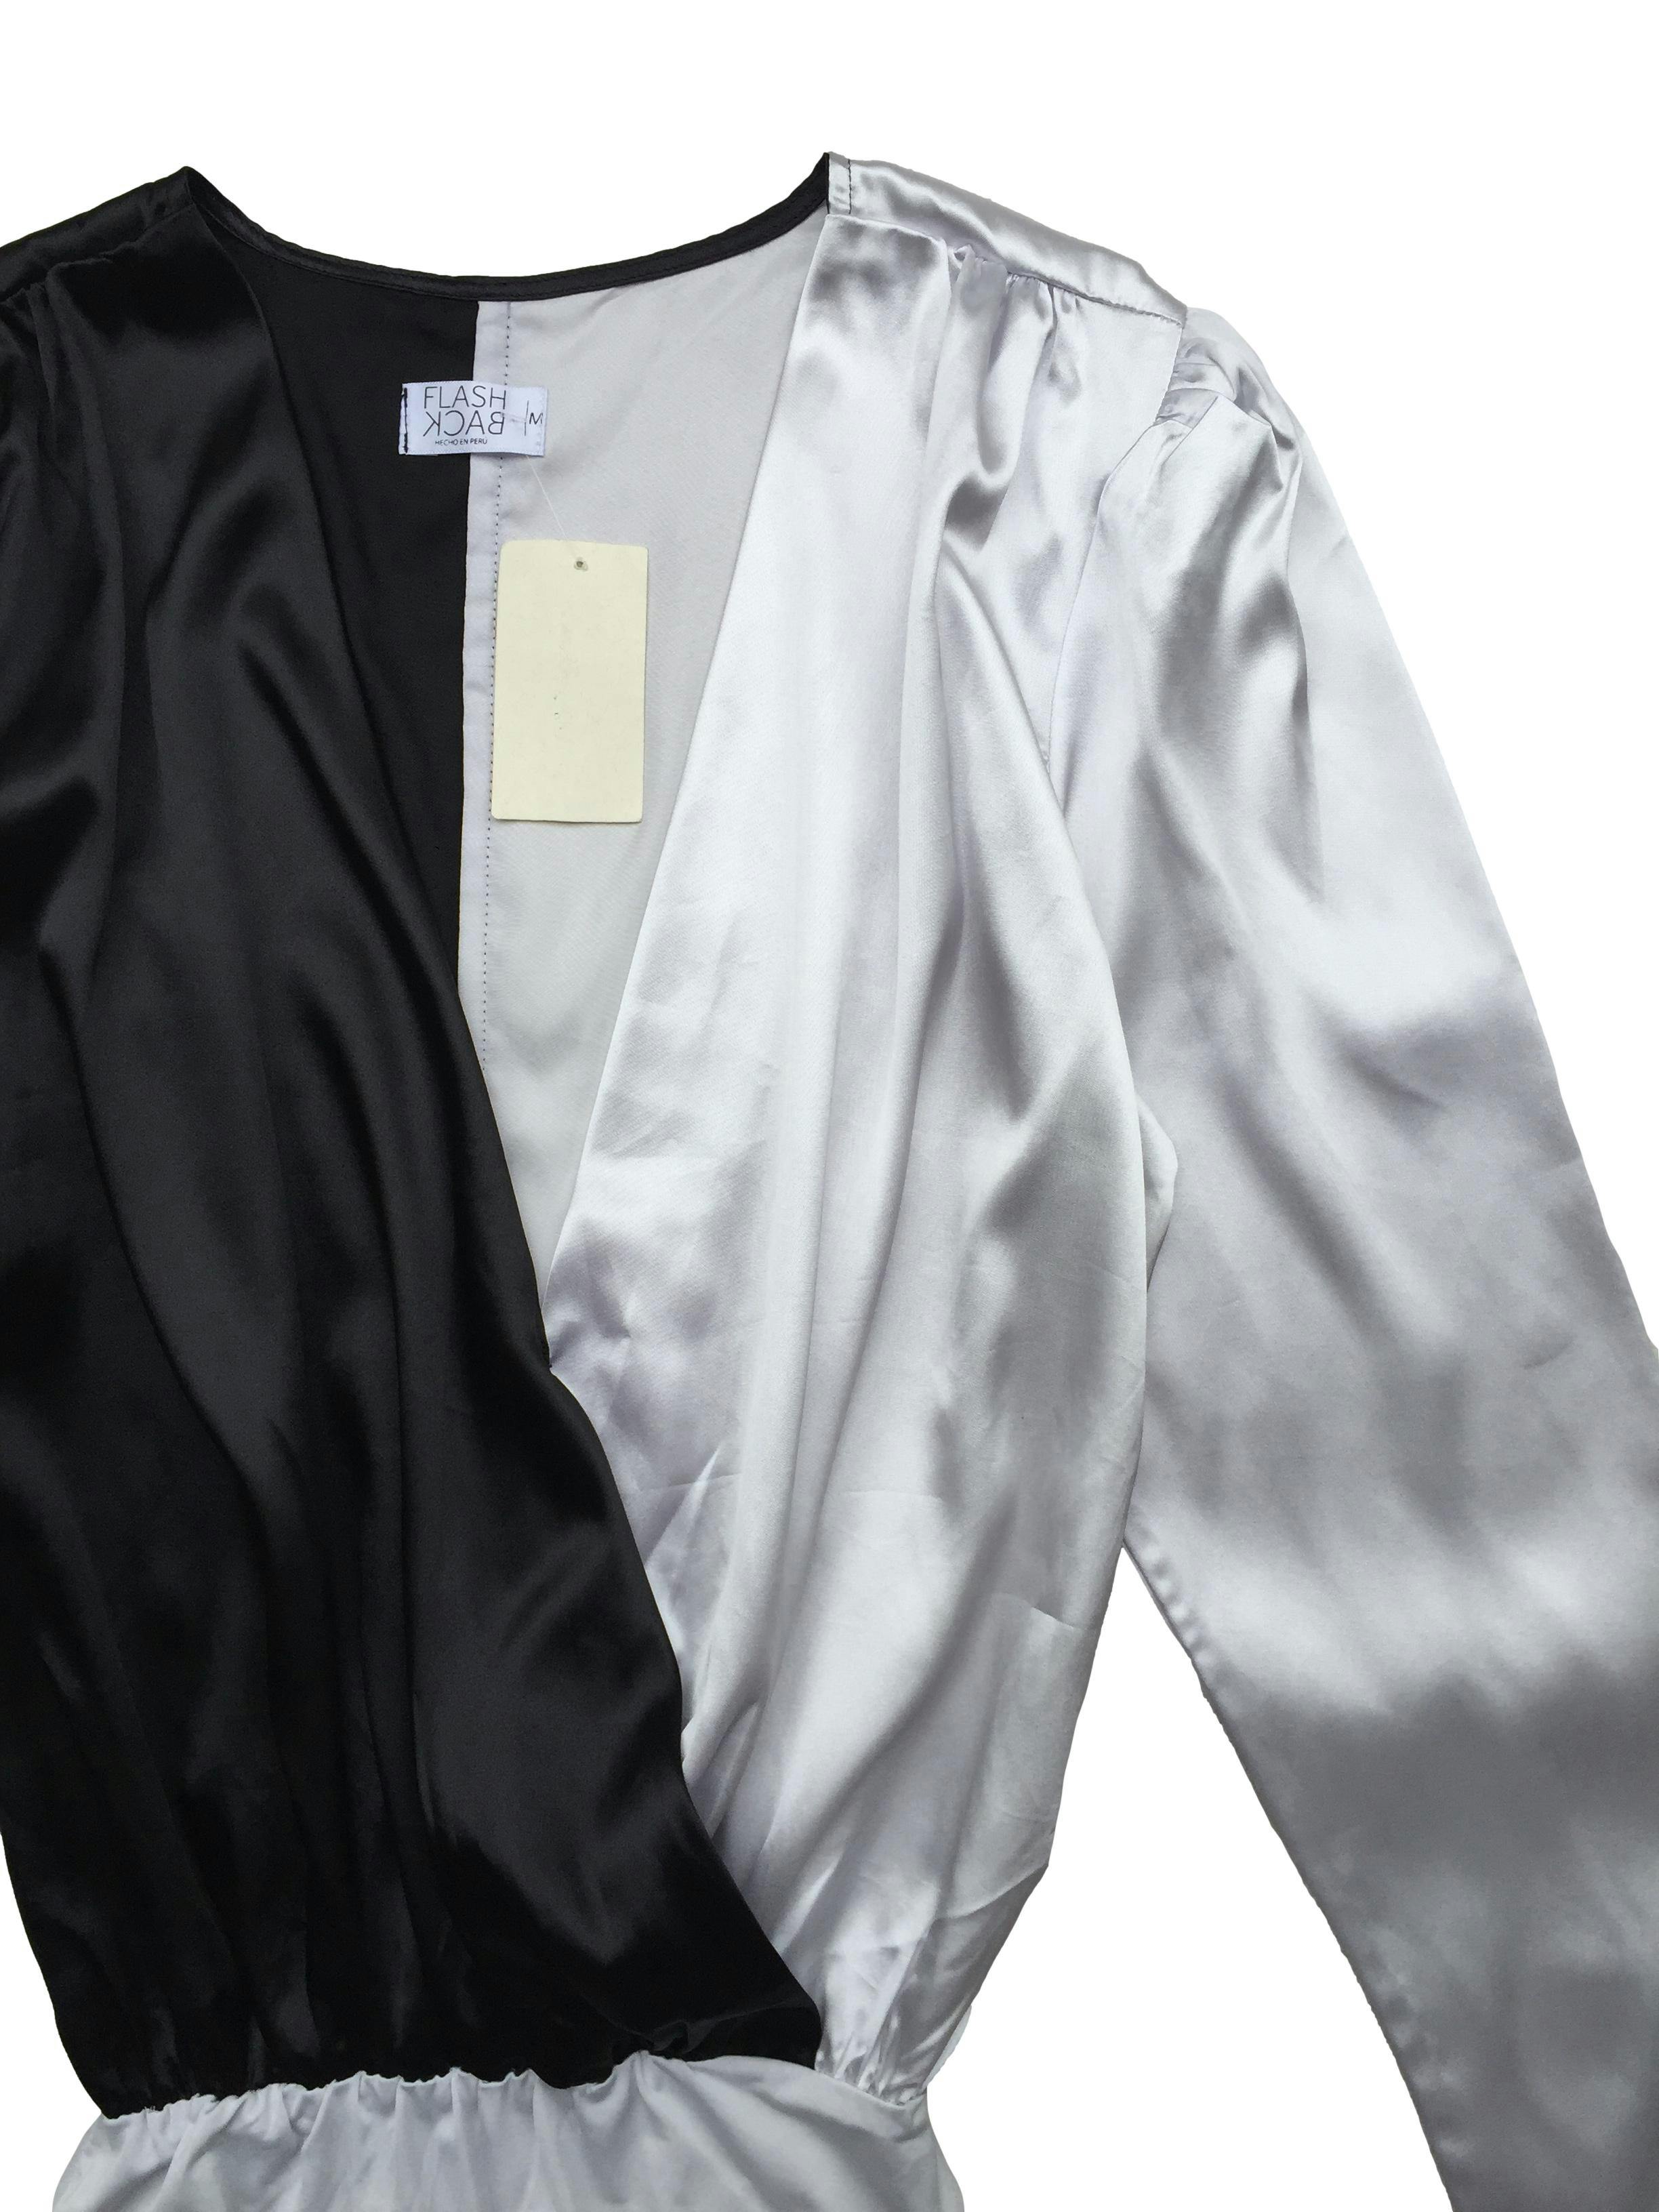 Blusa/body Flash Back de satín color block blanco y negro, tiene hombreras delgadas y broche inferior. Busto 100 cm, Largo 80cm.